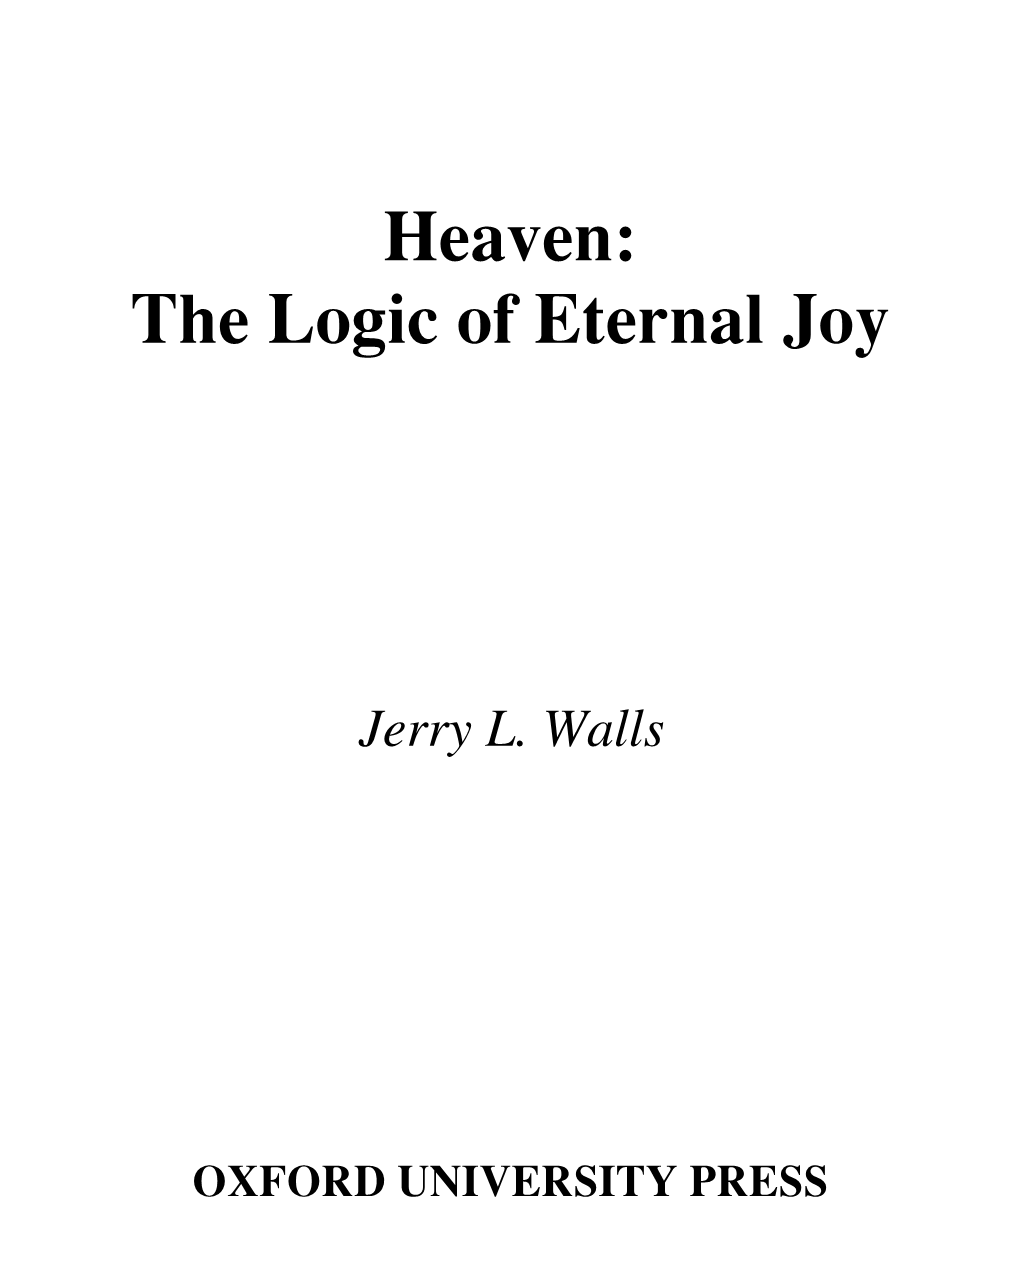 Heaven: the Logic of Eternal Joy